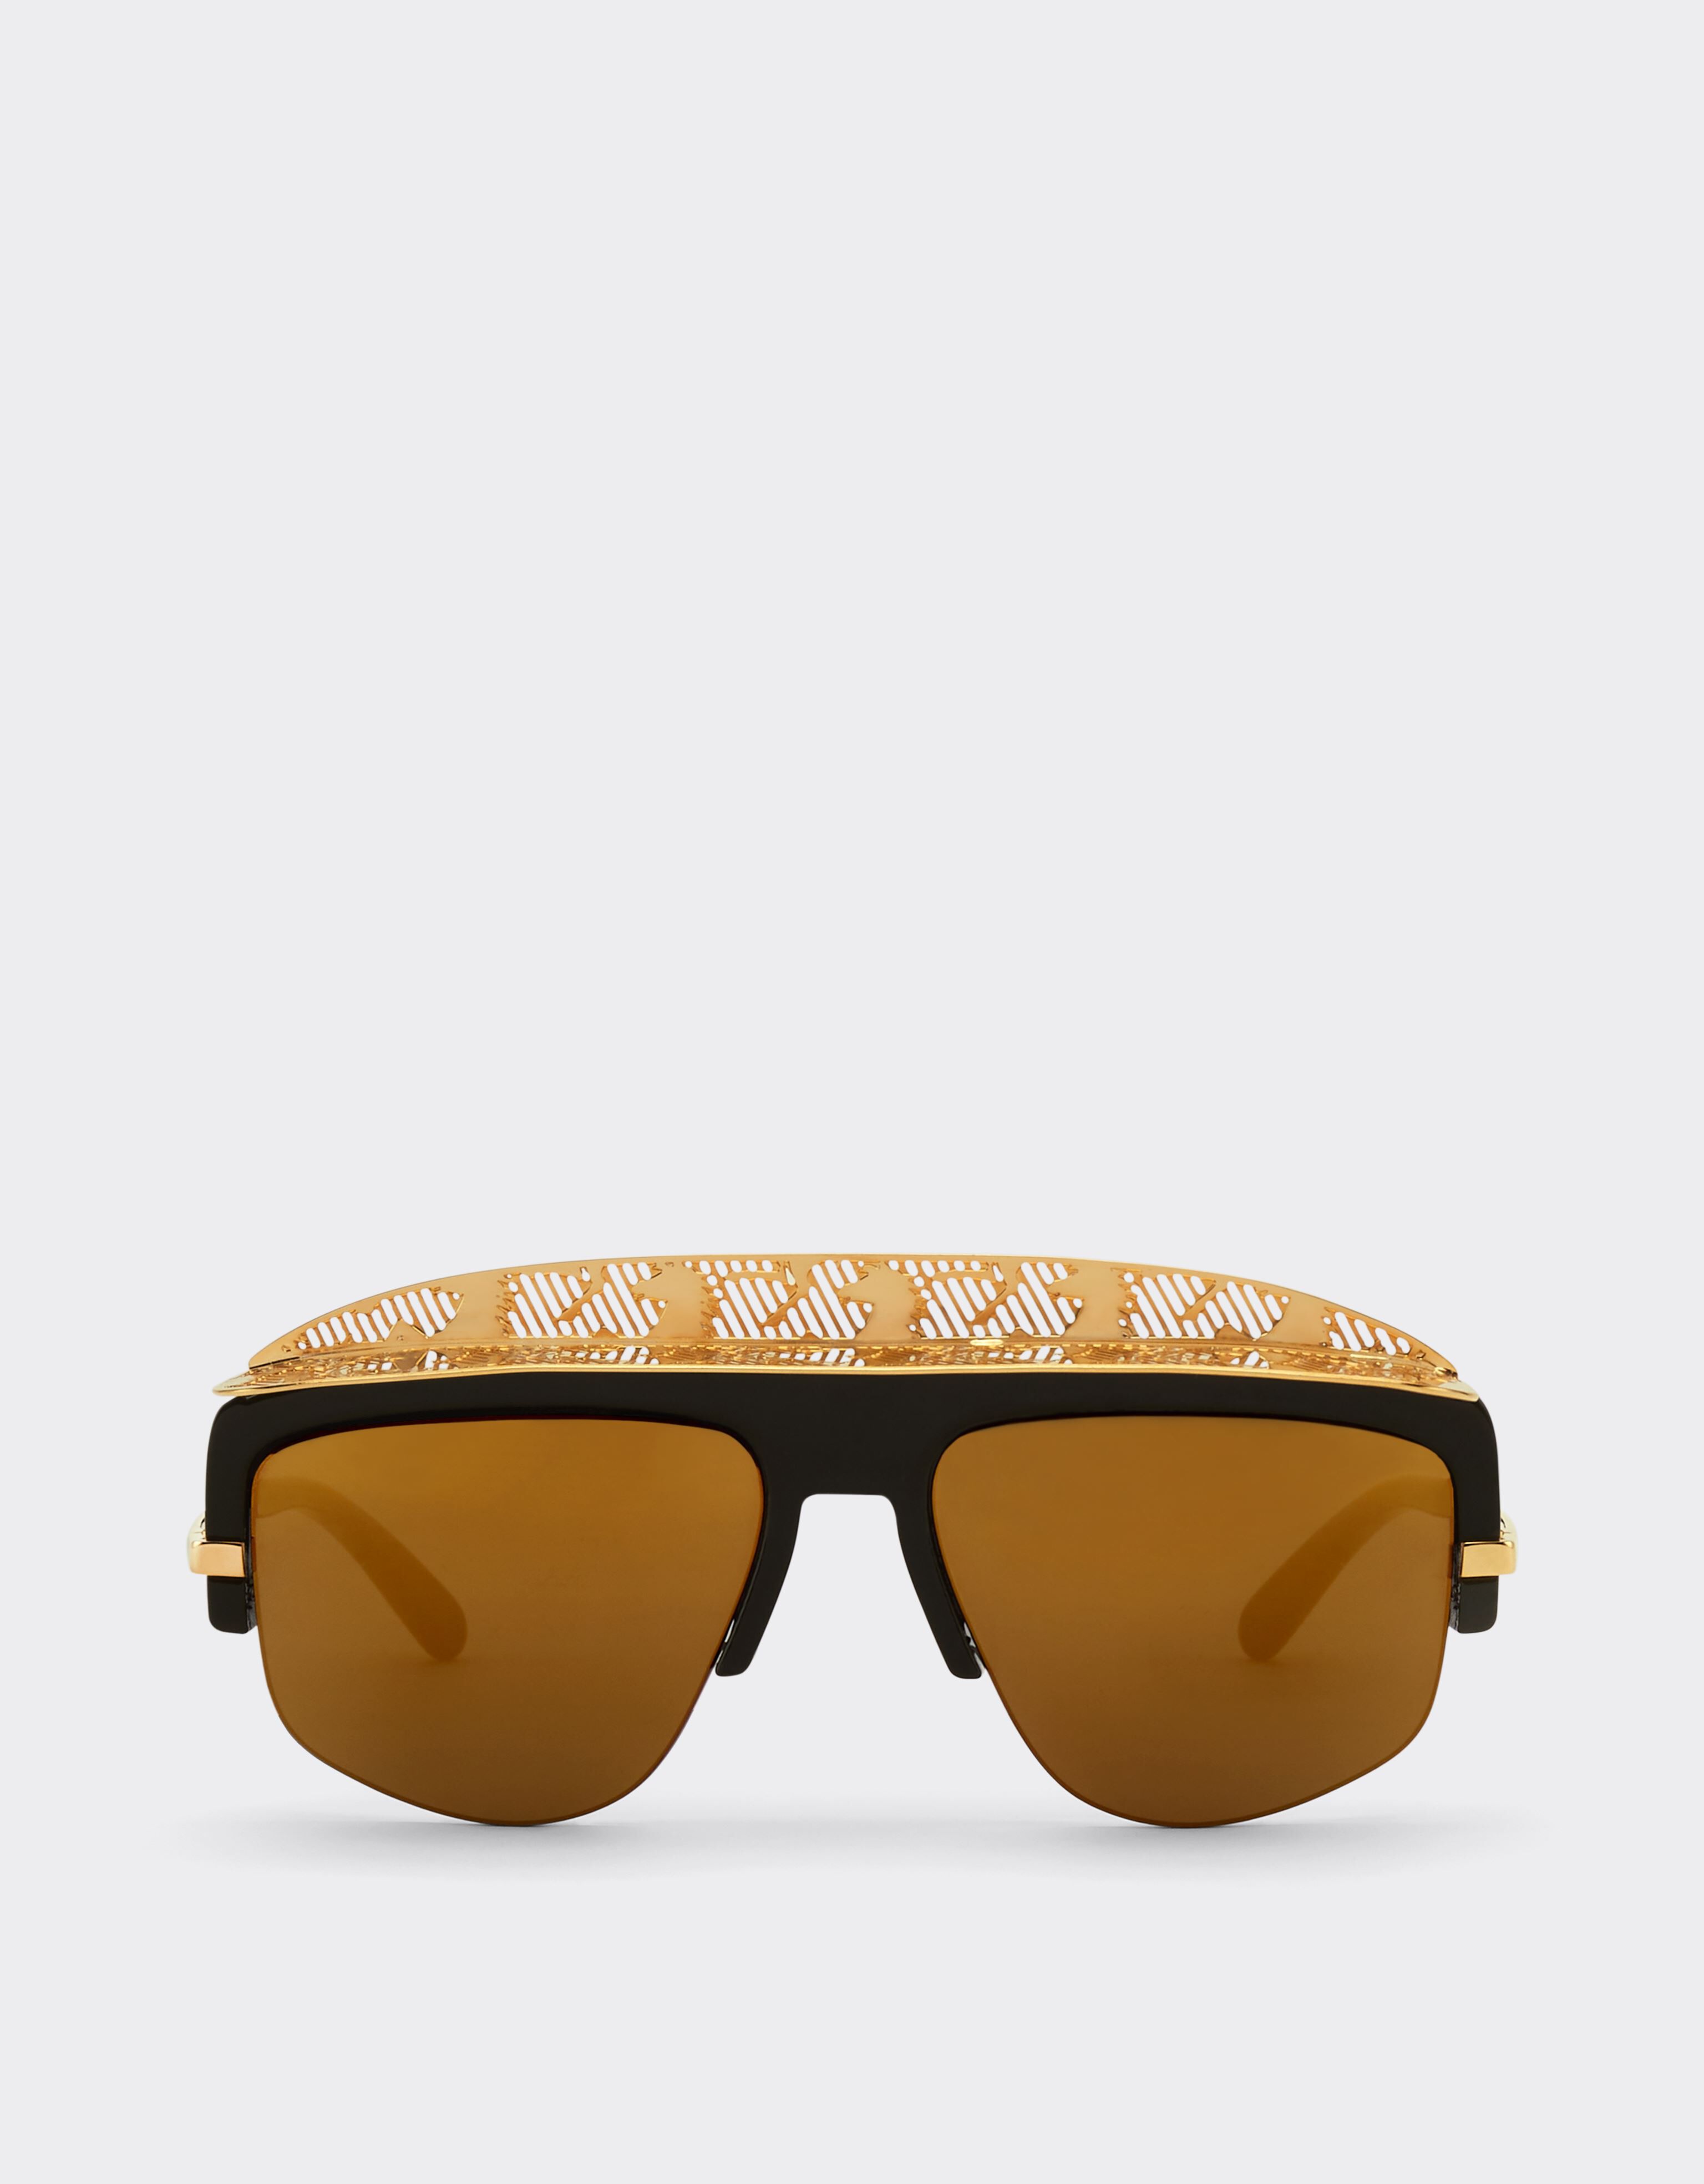 Ferrari Ferrari Sonnenbrille mit goldfarben verspiegelten Gläsern Schwarz F1201f